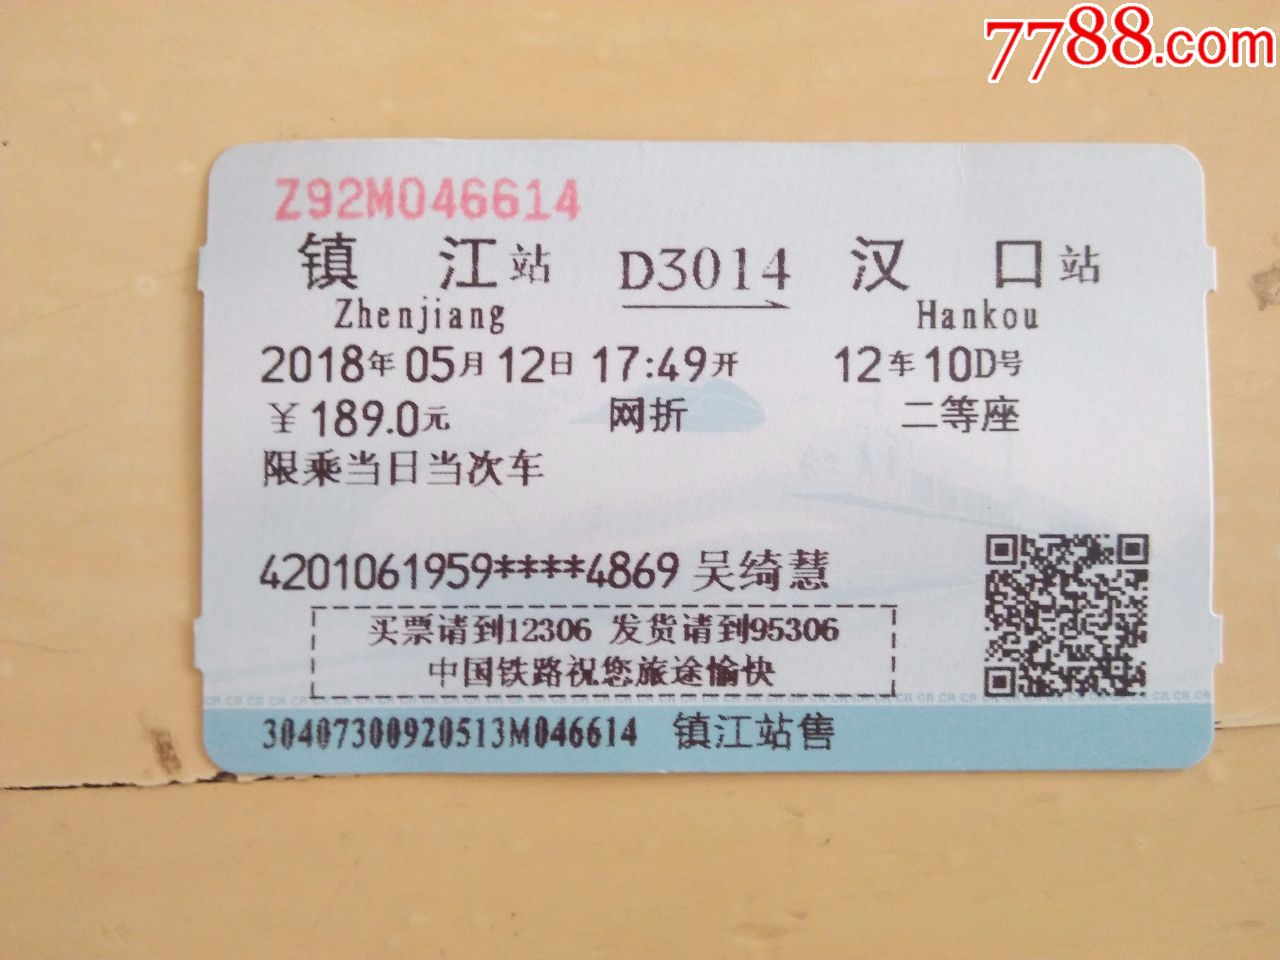 火车票镇江-汉口D3014次(已作废)蓝色版